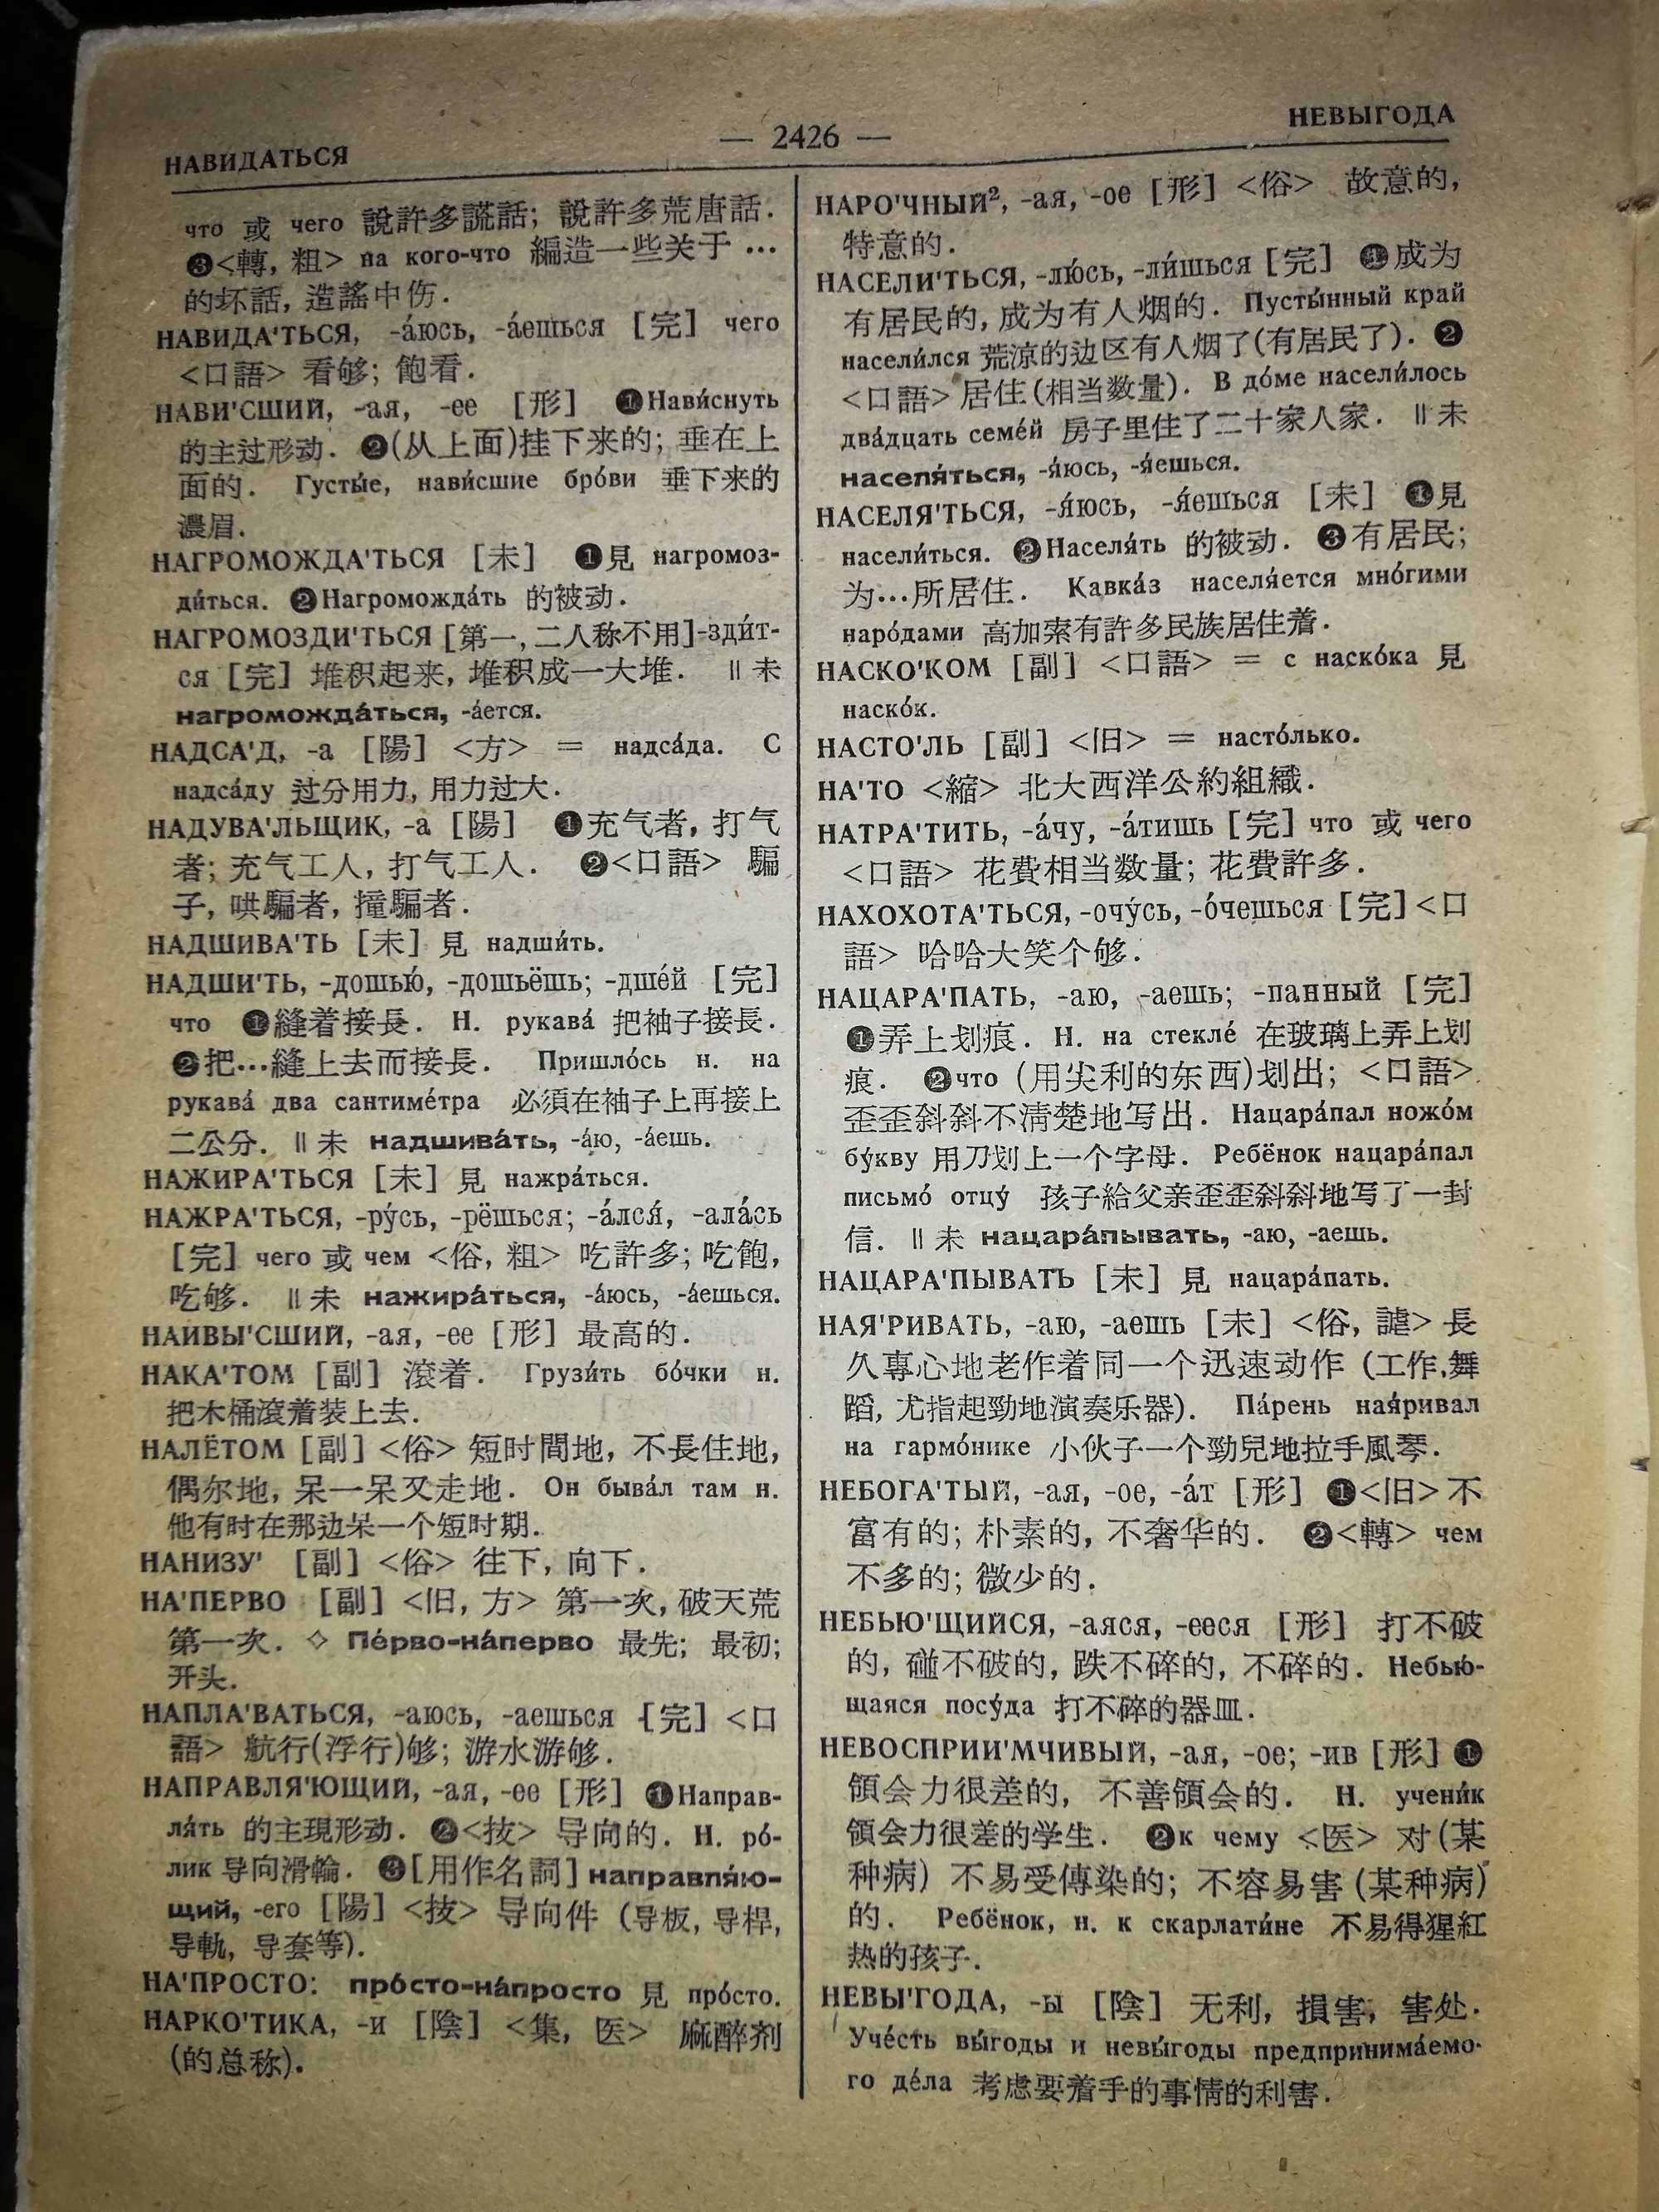 Русско - Китайский словарь - 2 тома